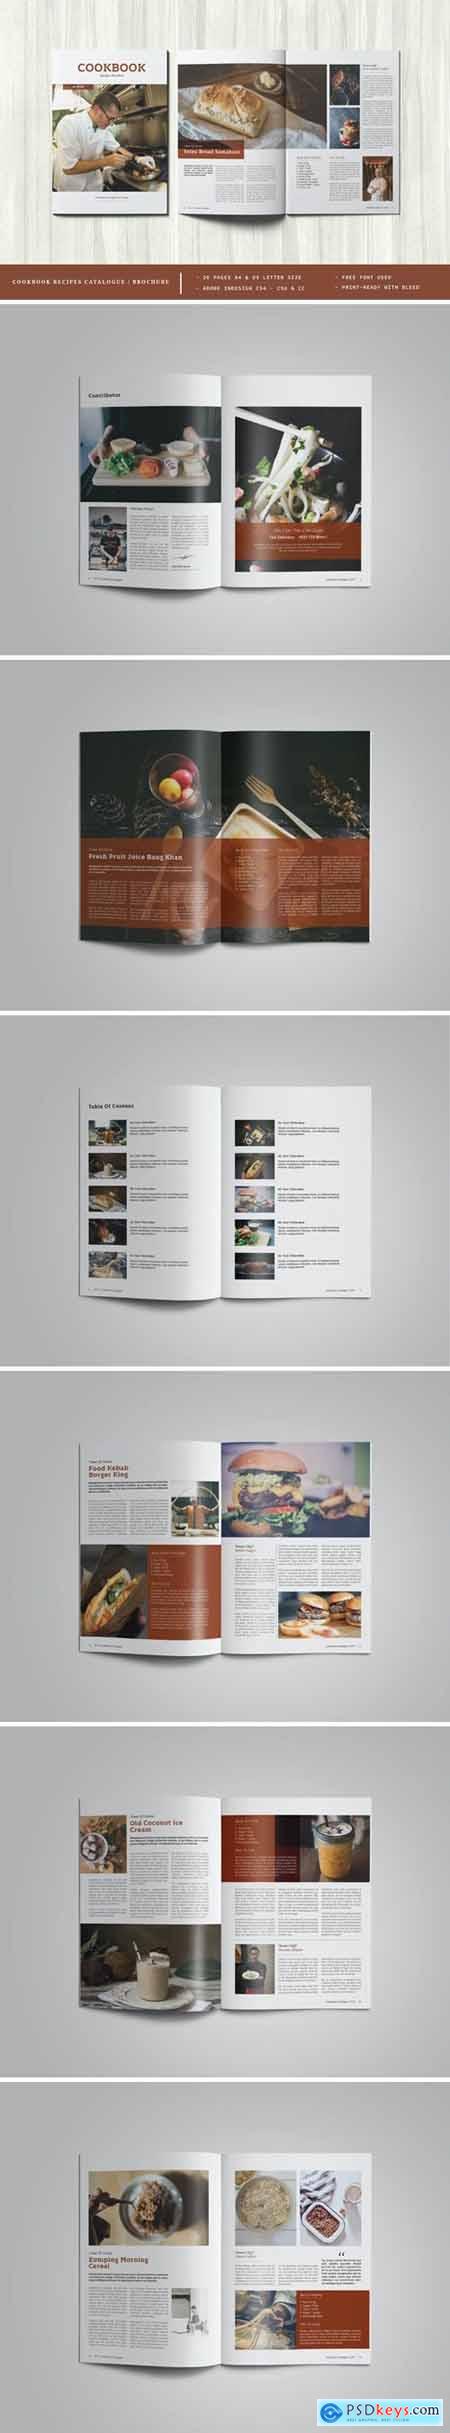 Cookbook Recipes Catalogue - Brochure